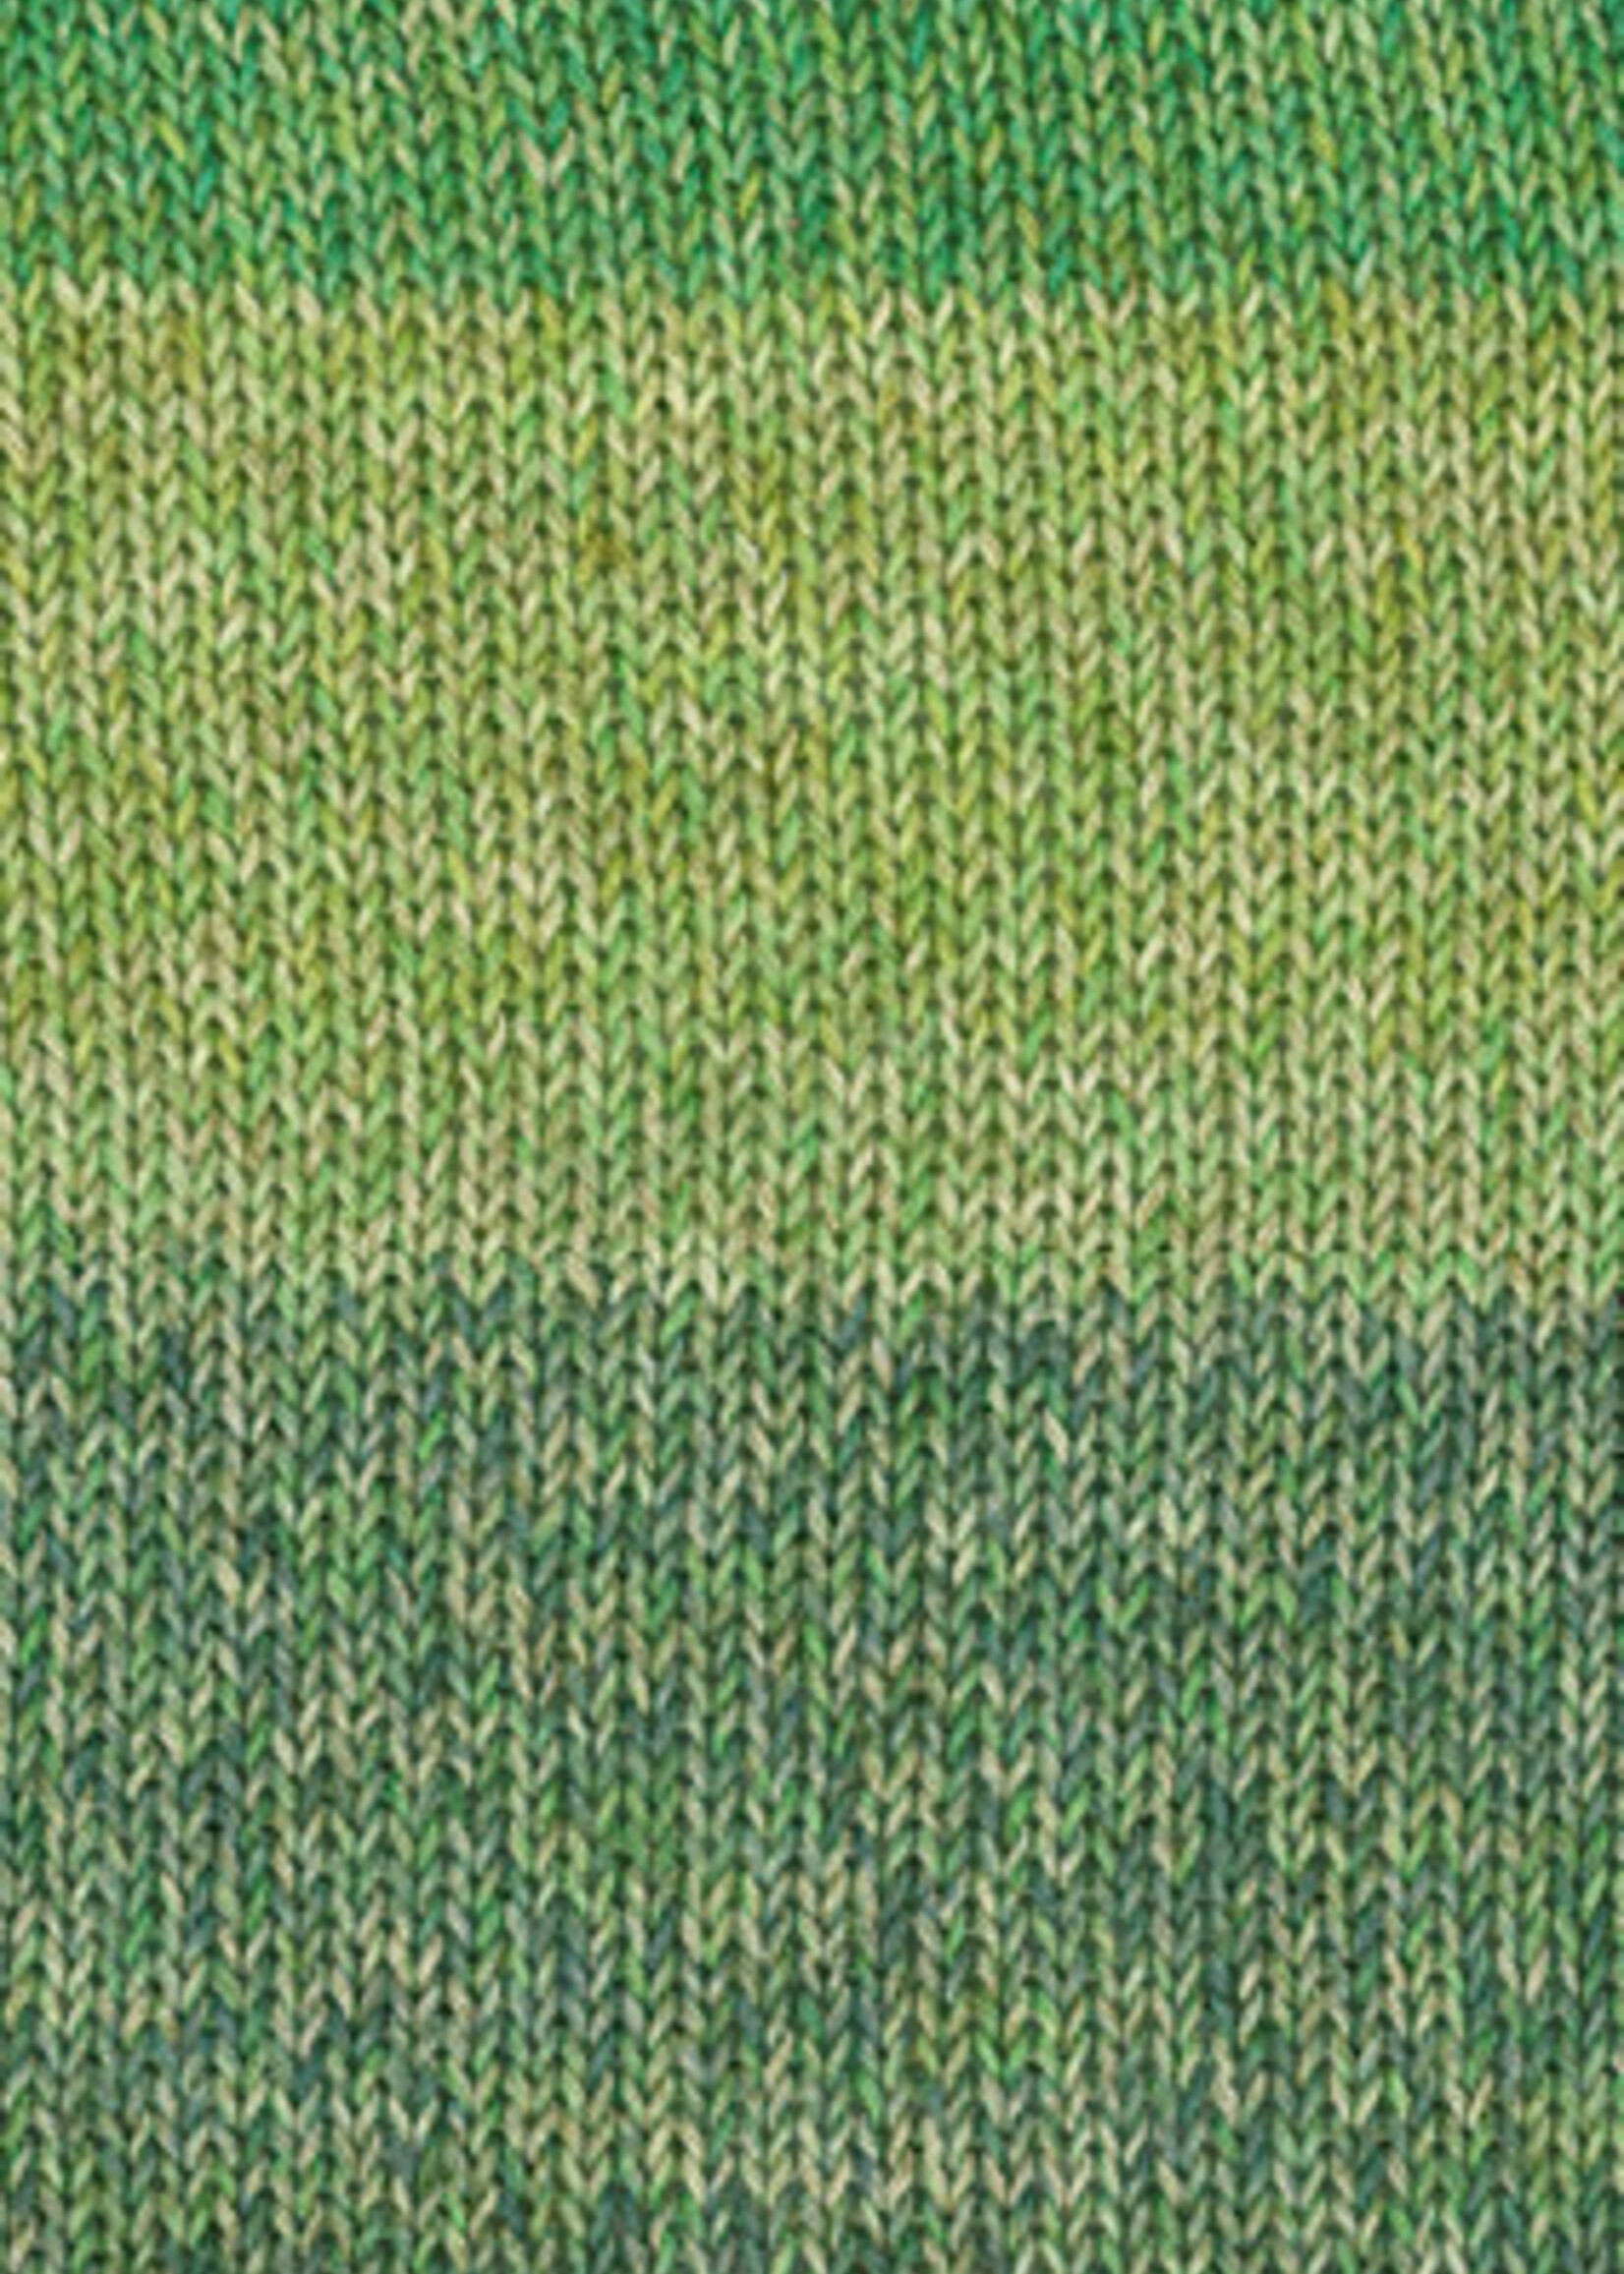 Lana Grossa Diversa Print - Lana Grossa -107 olijf/groen/geelgroen/bos groen/grijs groen